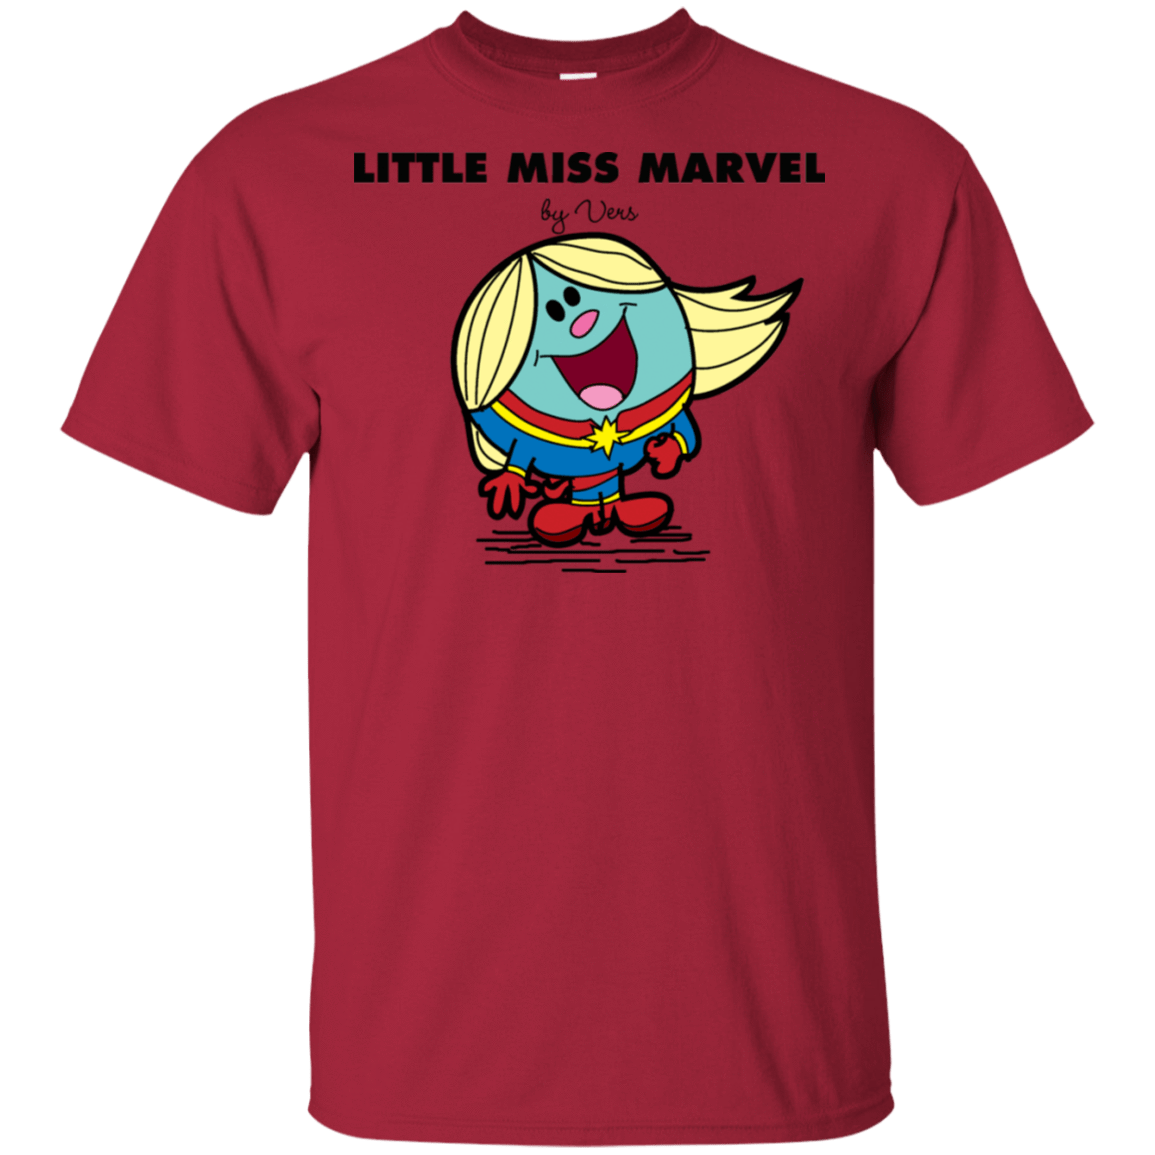 T-Shirts Cardinal / S Little Miss Marvel T-Shirt